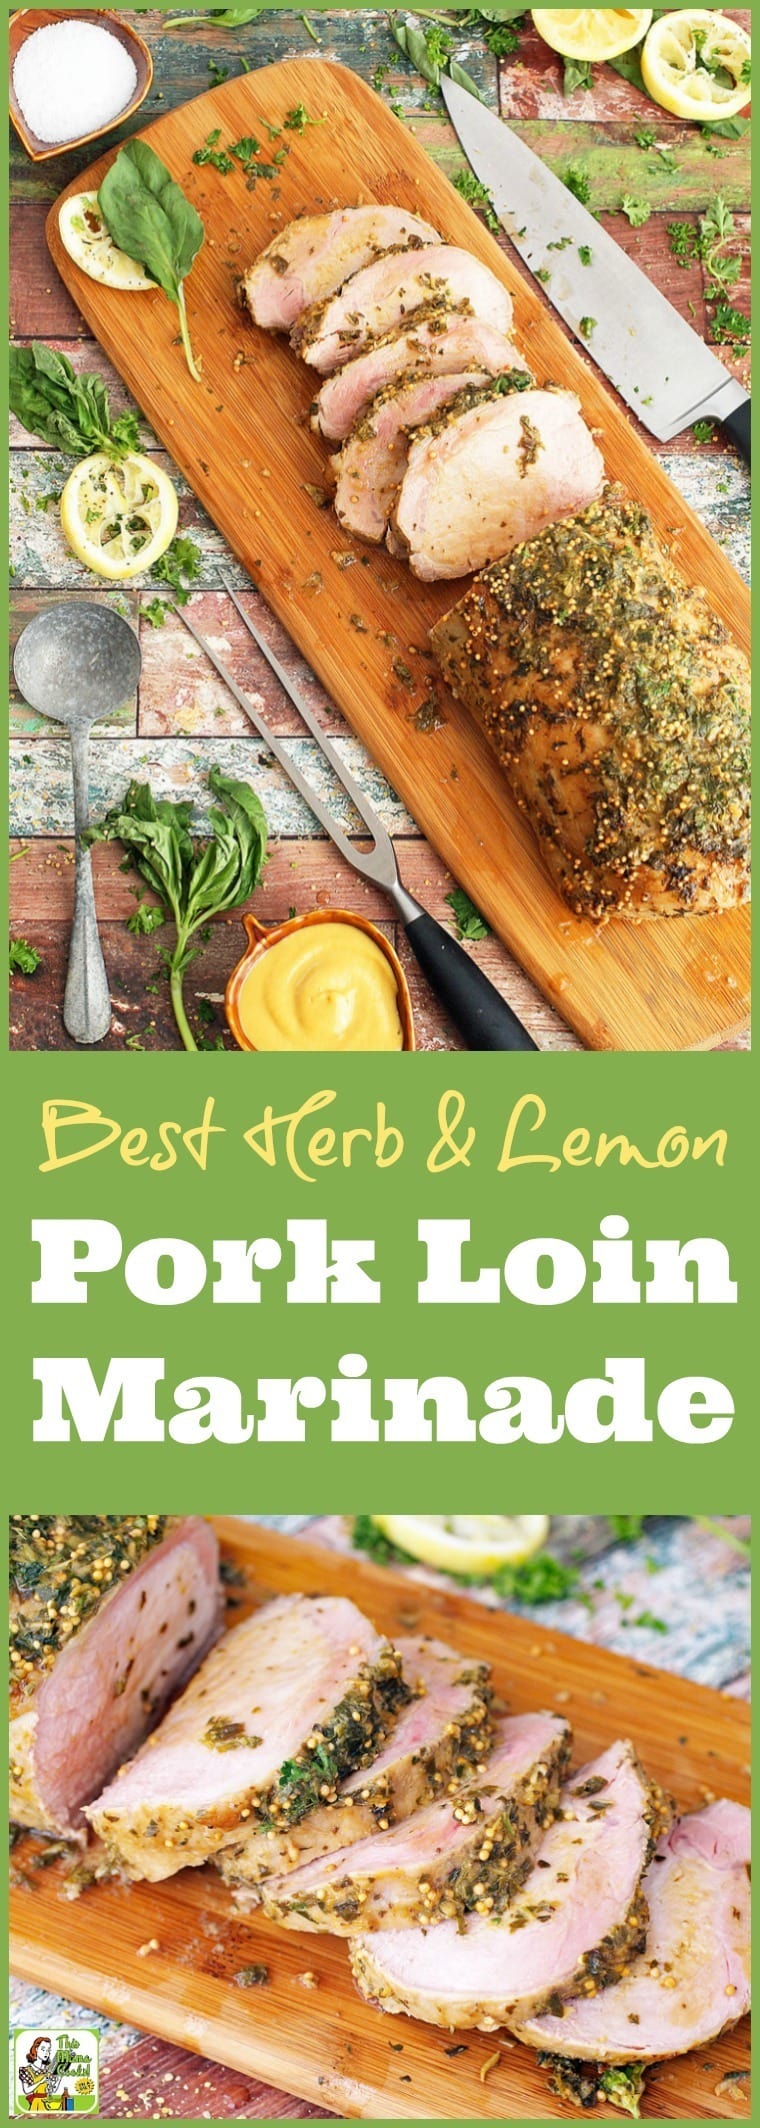 Best Herb & Lemon Pork Loin Marinade for Pork Roast